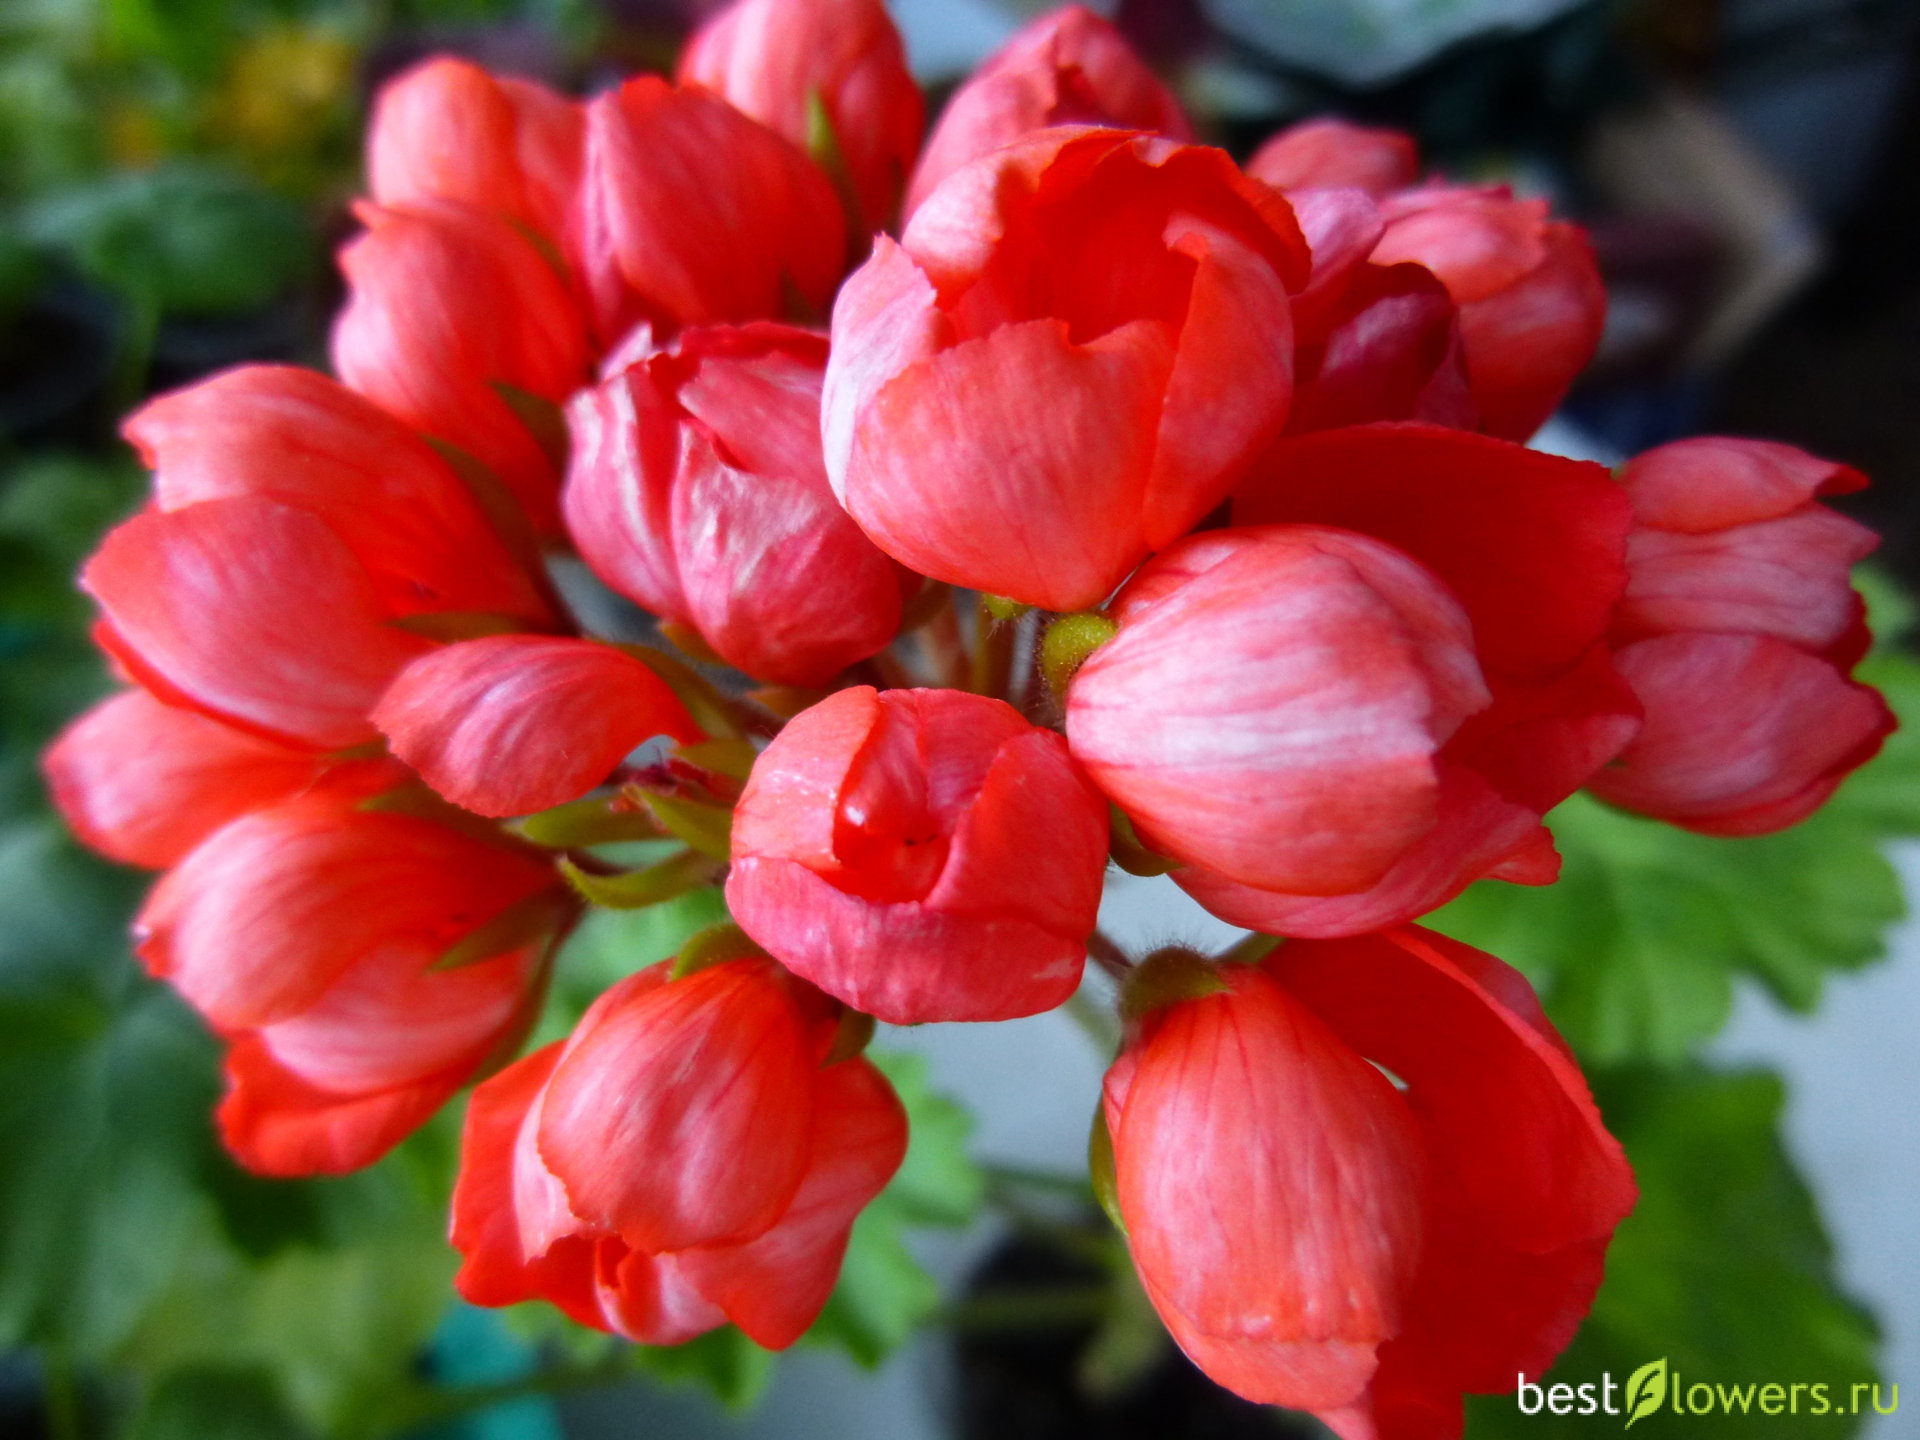 Пеларгония тюльпановидная red pandora условия выращивания